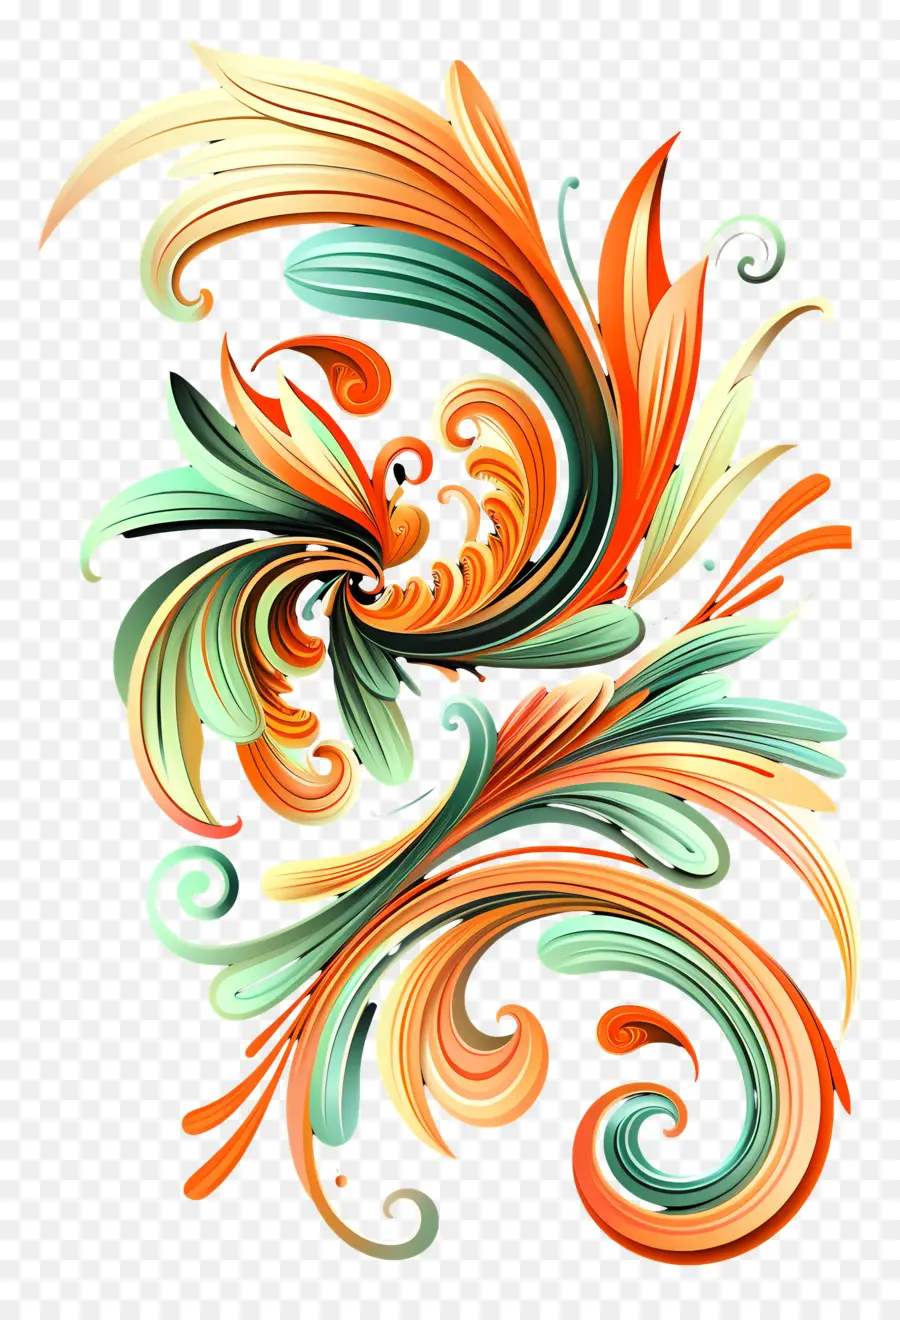 disegno floreale - Design floreale intricato in arancione, verde, nero